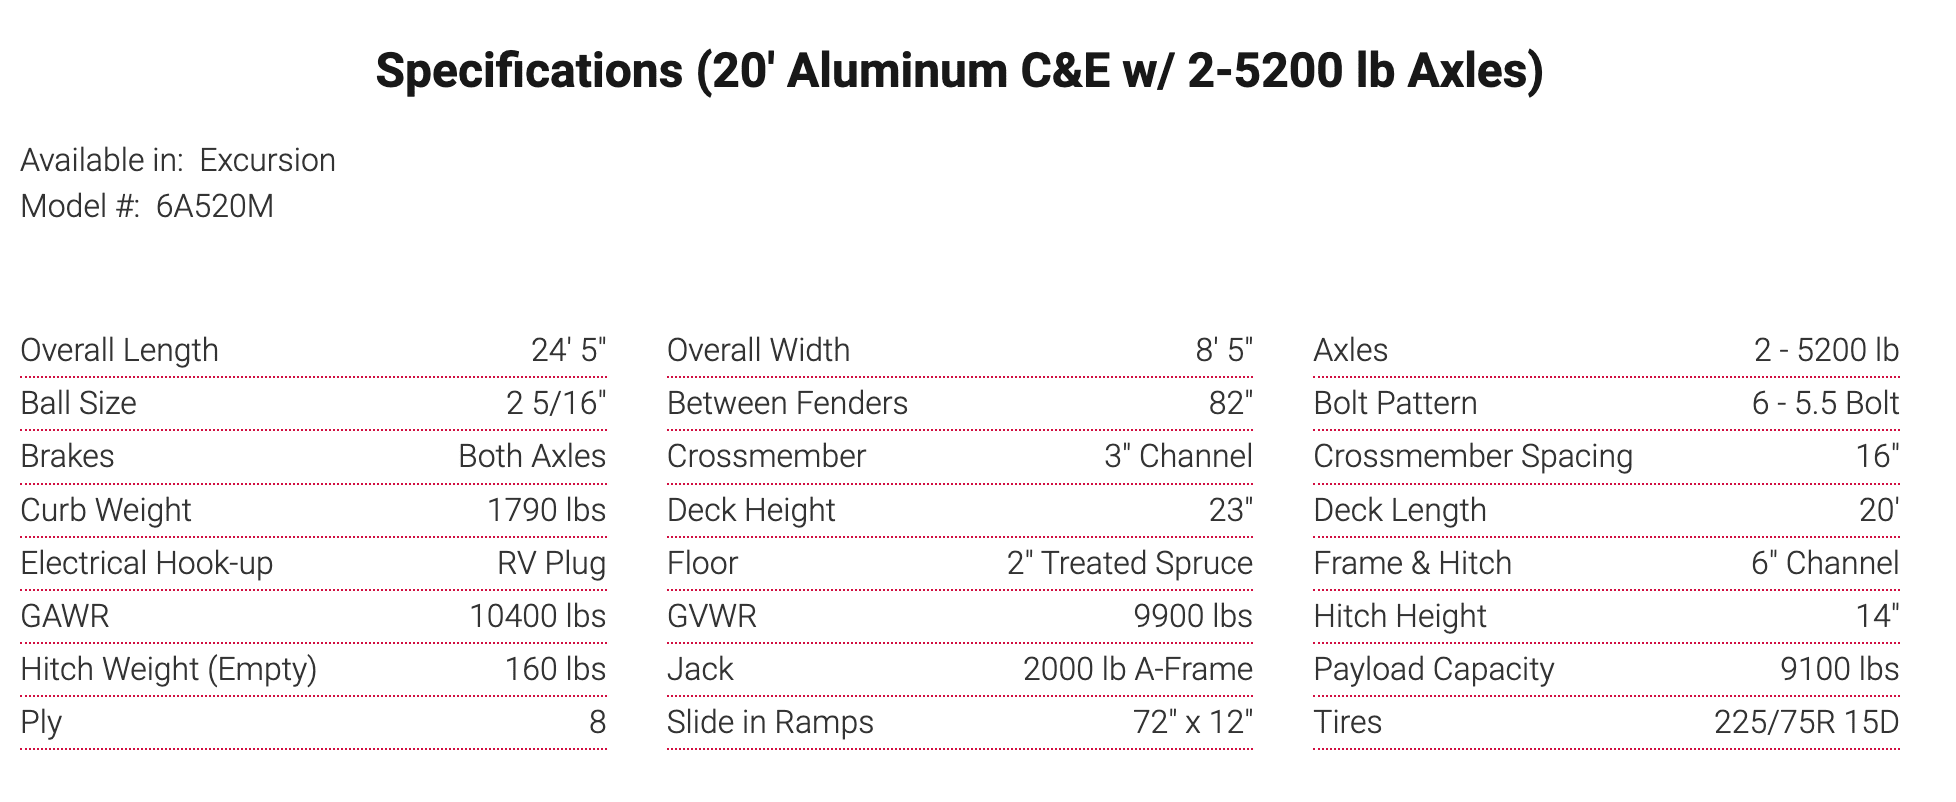 Specifications (20' Aluminum C&E w/ 2-5200 lb Axles)